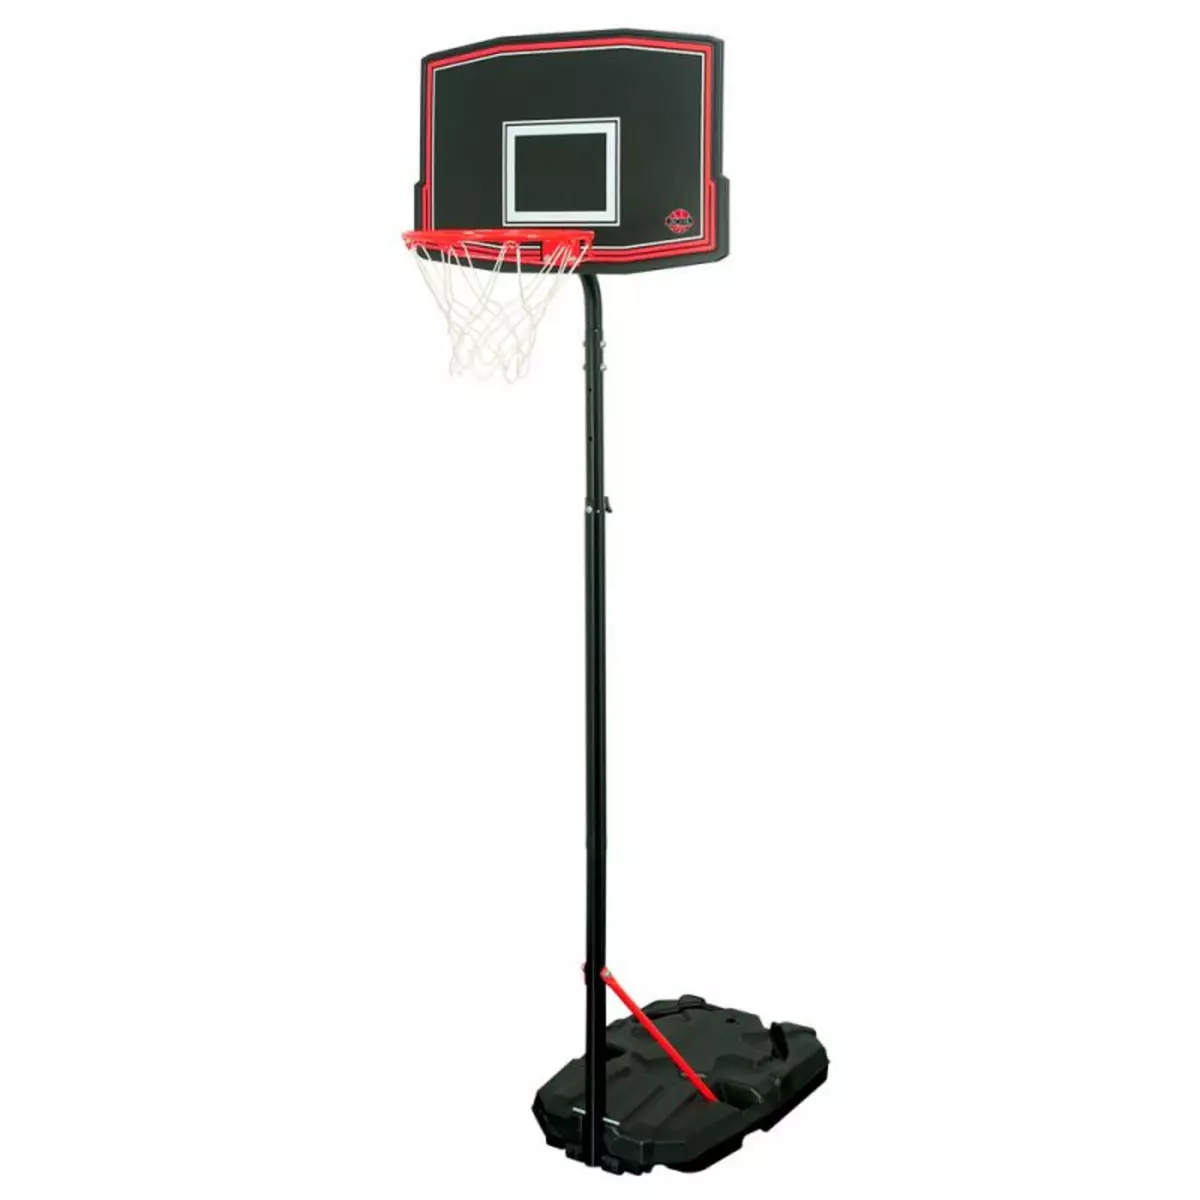 BUMBER Panier de Basket sur Pied Mobile Phoenix - Bumber - Hauteur réglable de 2m à 2m60